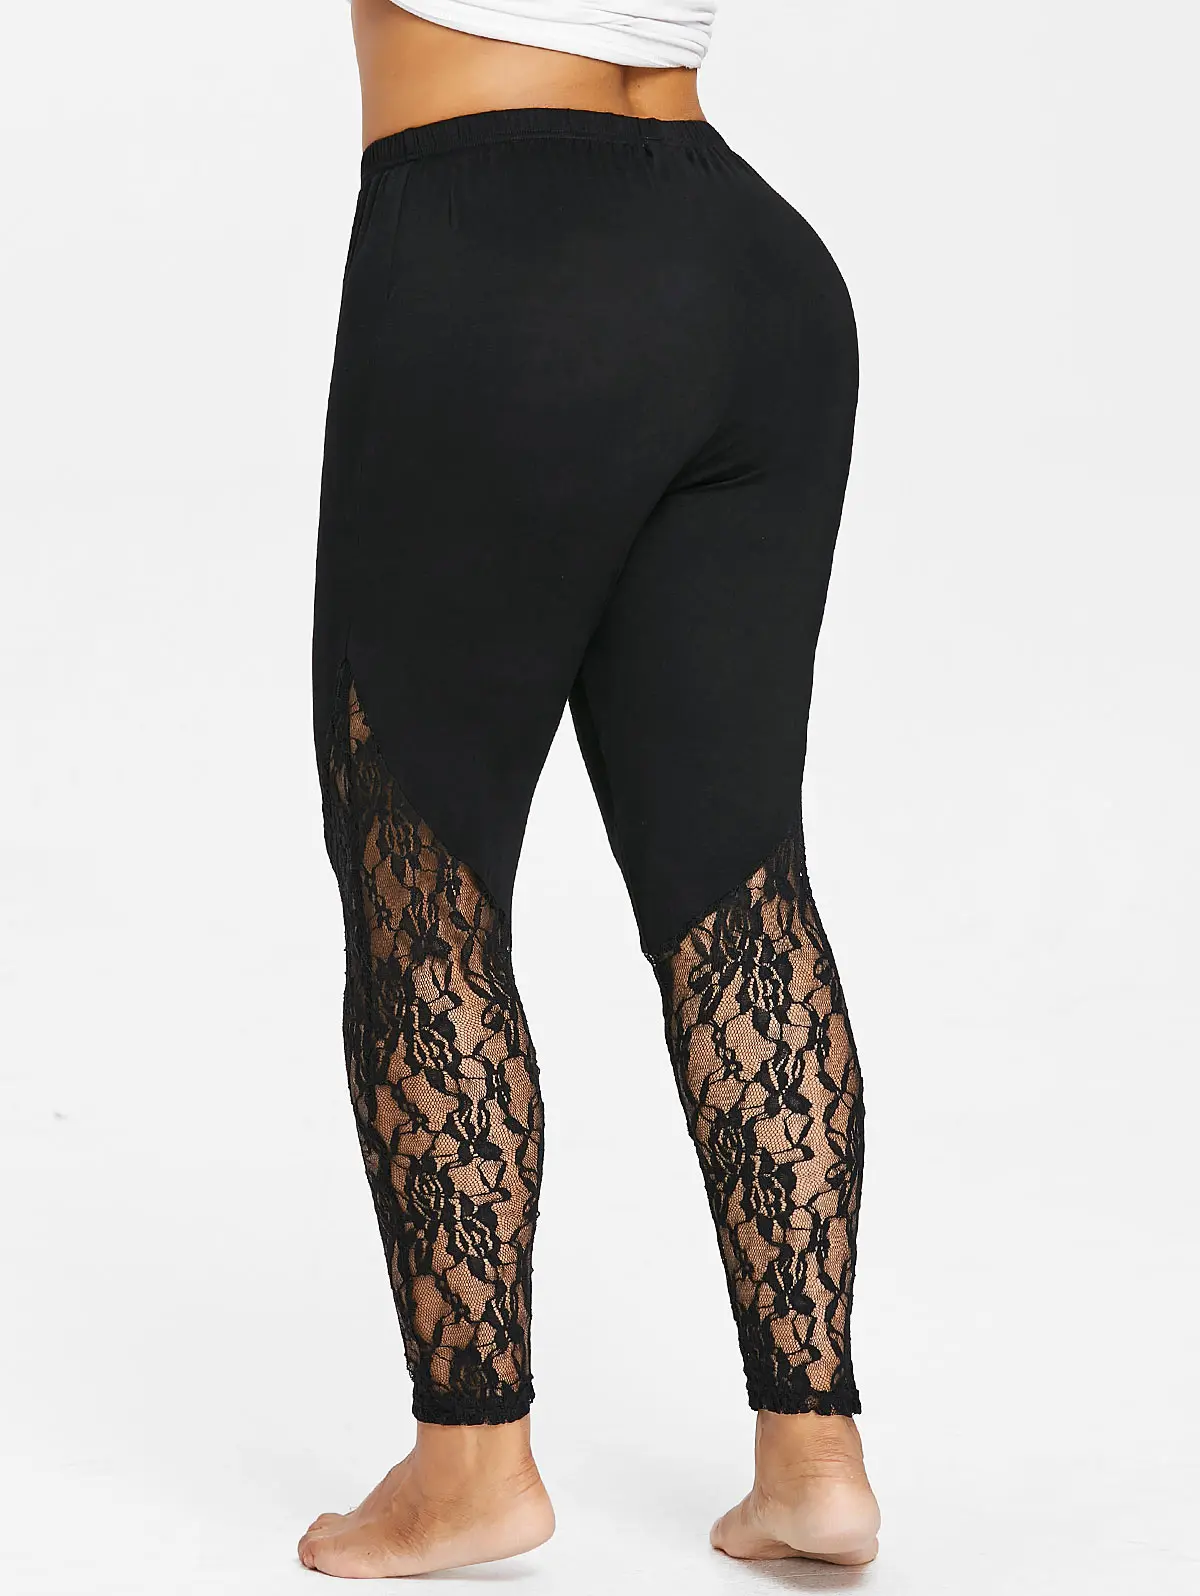 Wisalo плюс размер 5XL из тонкой ткани с цветочным кружевом леггинсы эластичные Высокая талия Карандаш обтягивающие узкие брюки женские брюки